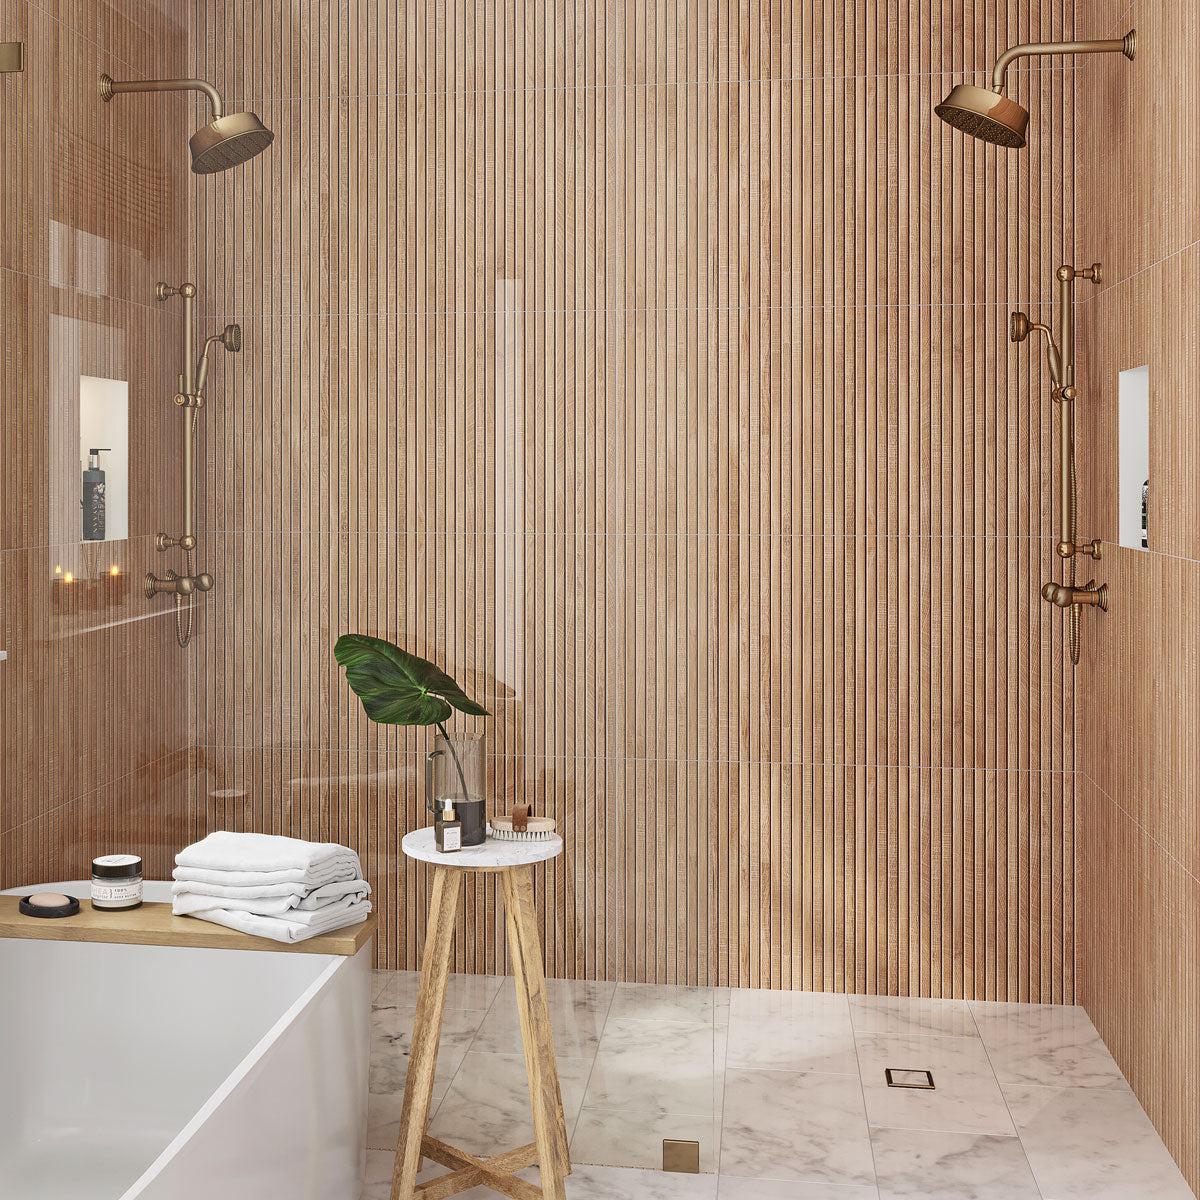 Wood look slat shower wall tile made of porcelain